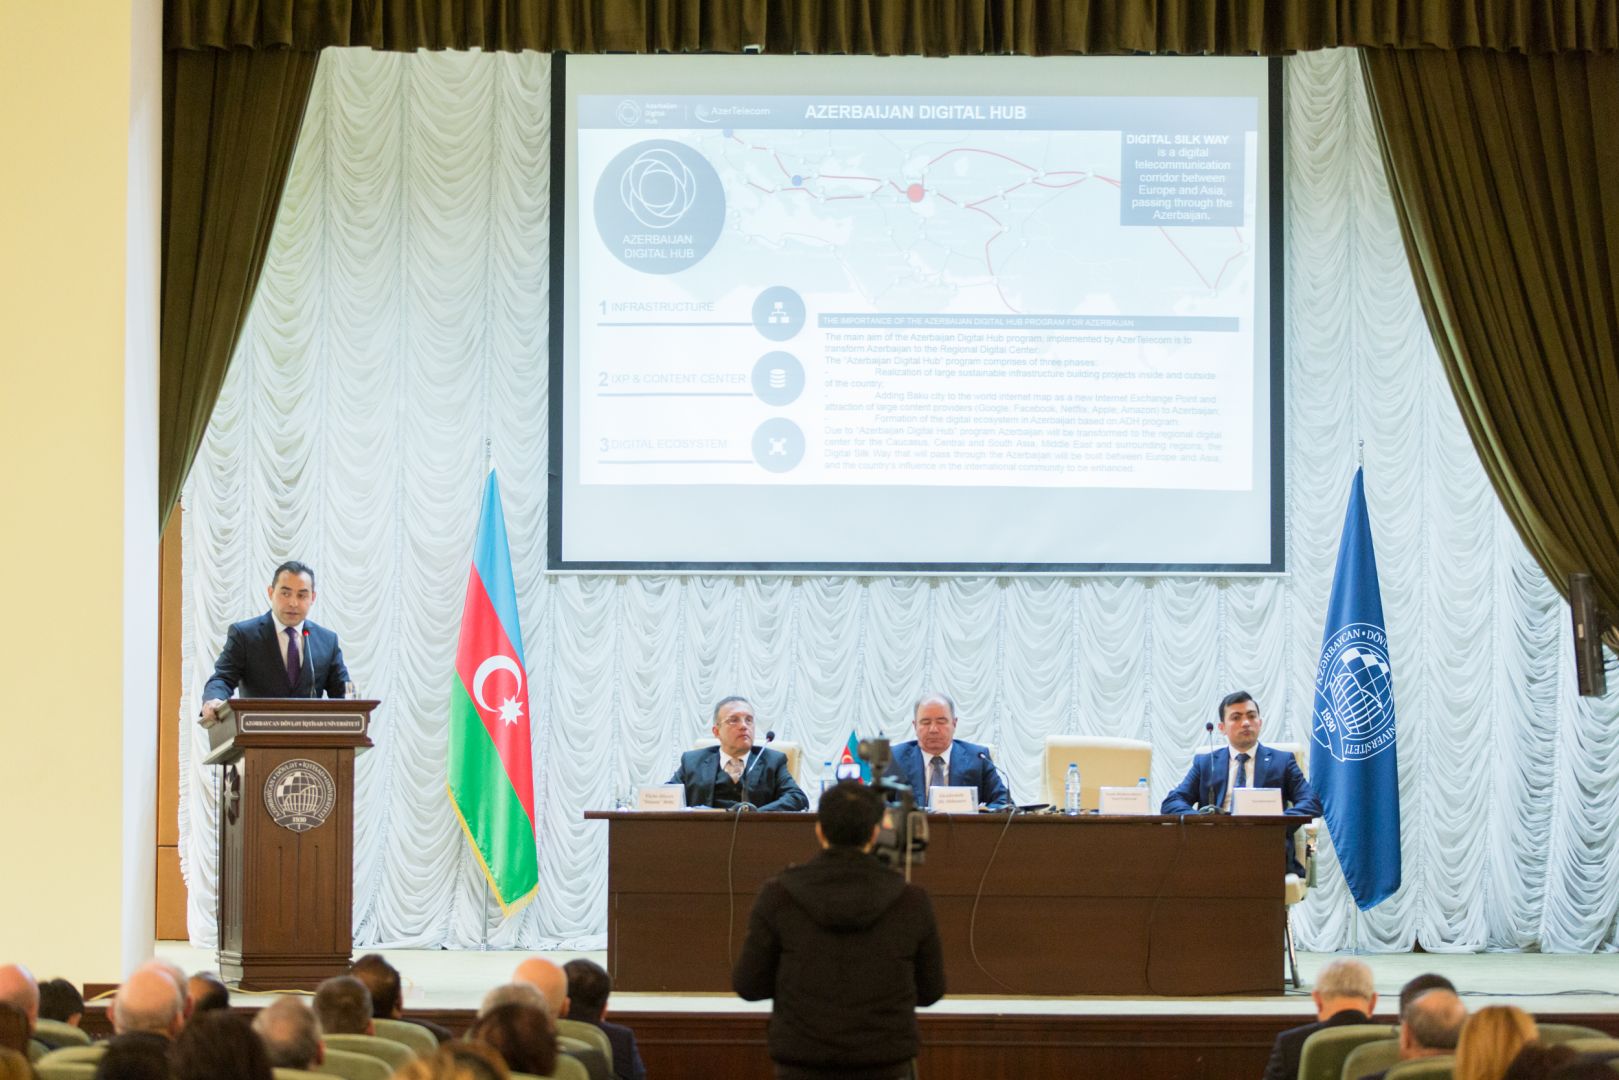 Программа “Azerbaijan Digital Hub” была представлена в рамках международной конференции (ФОТО)